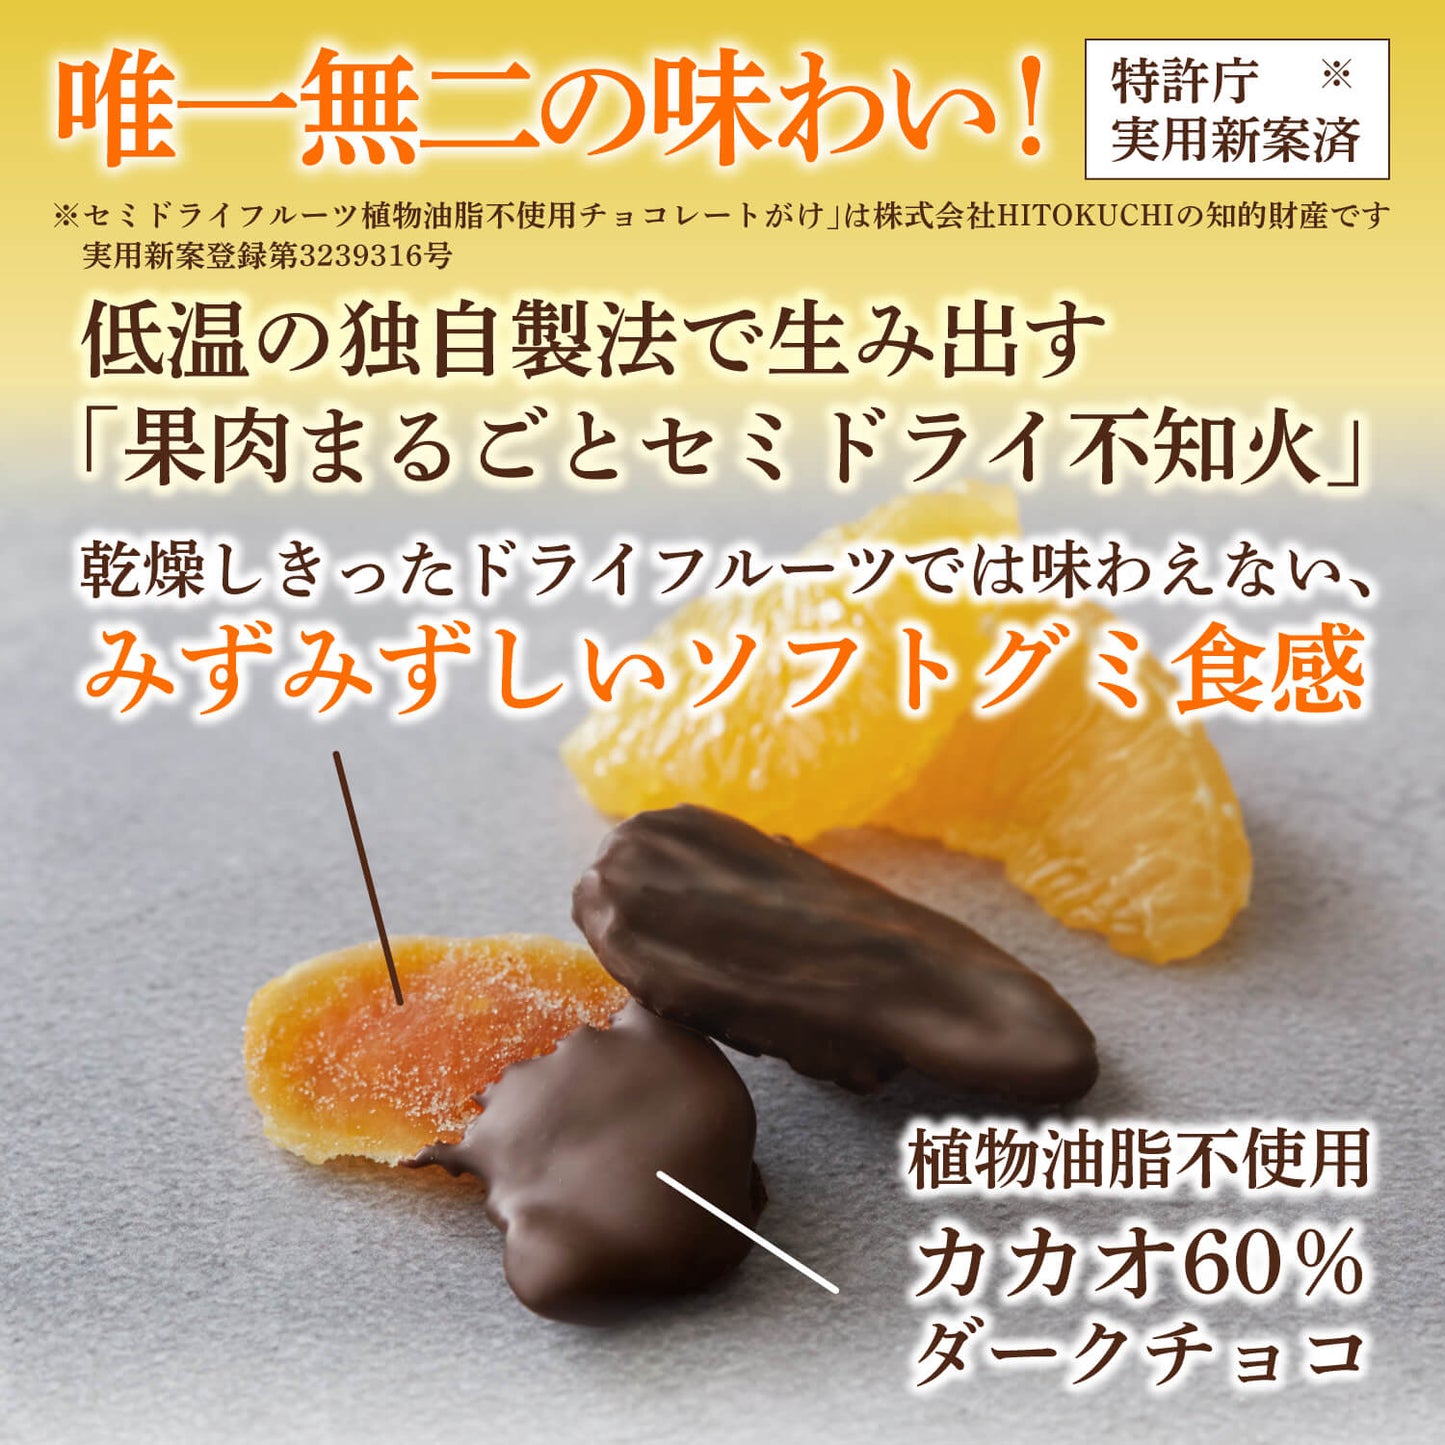 【3袋セット】フルーツチョコ3種セット